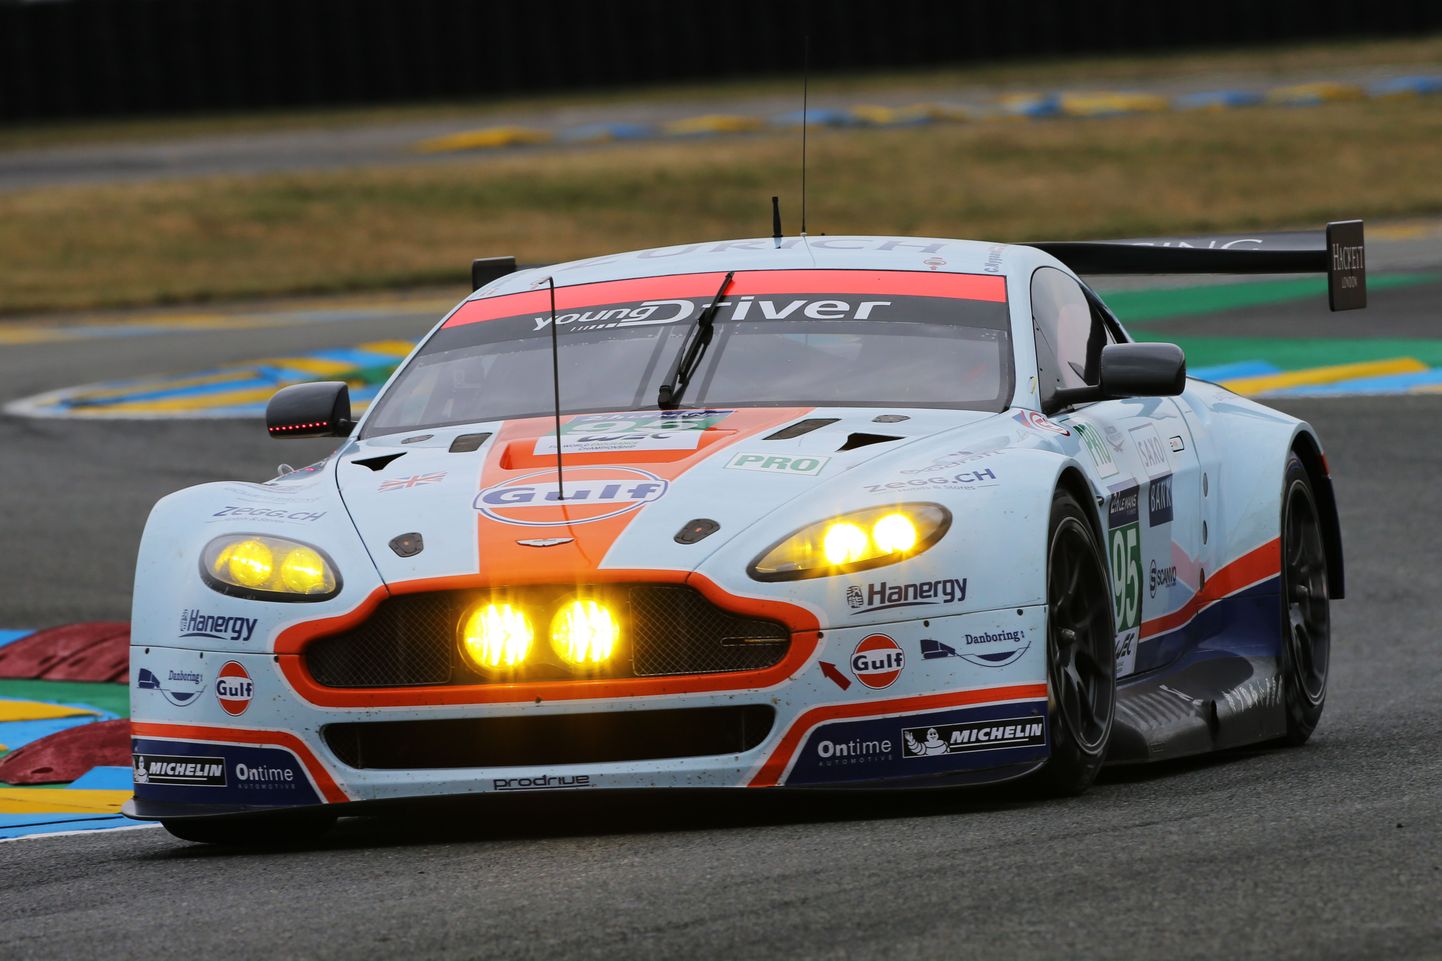 Aston Martini tiimid on aastaid osalenud edukalt pikamaasõitudel. Fotol Christoffer Nygaardi, Marco Sörenseni ja Nicki Thiimi auto tänavusel Le Mansi võidusõidul.